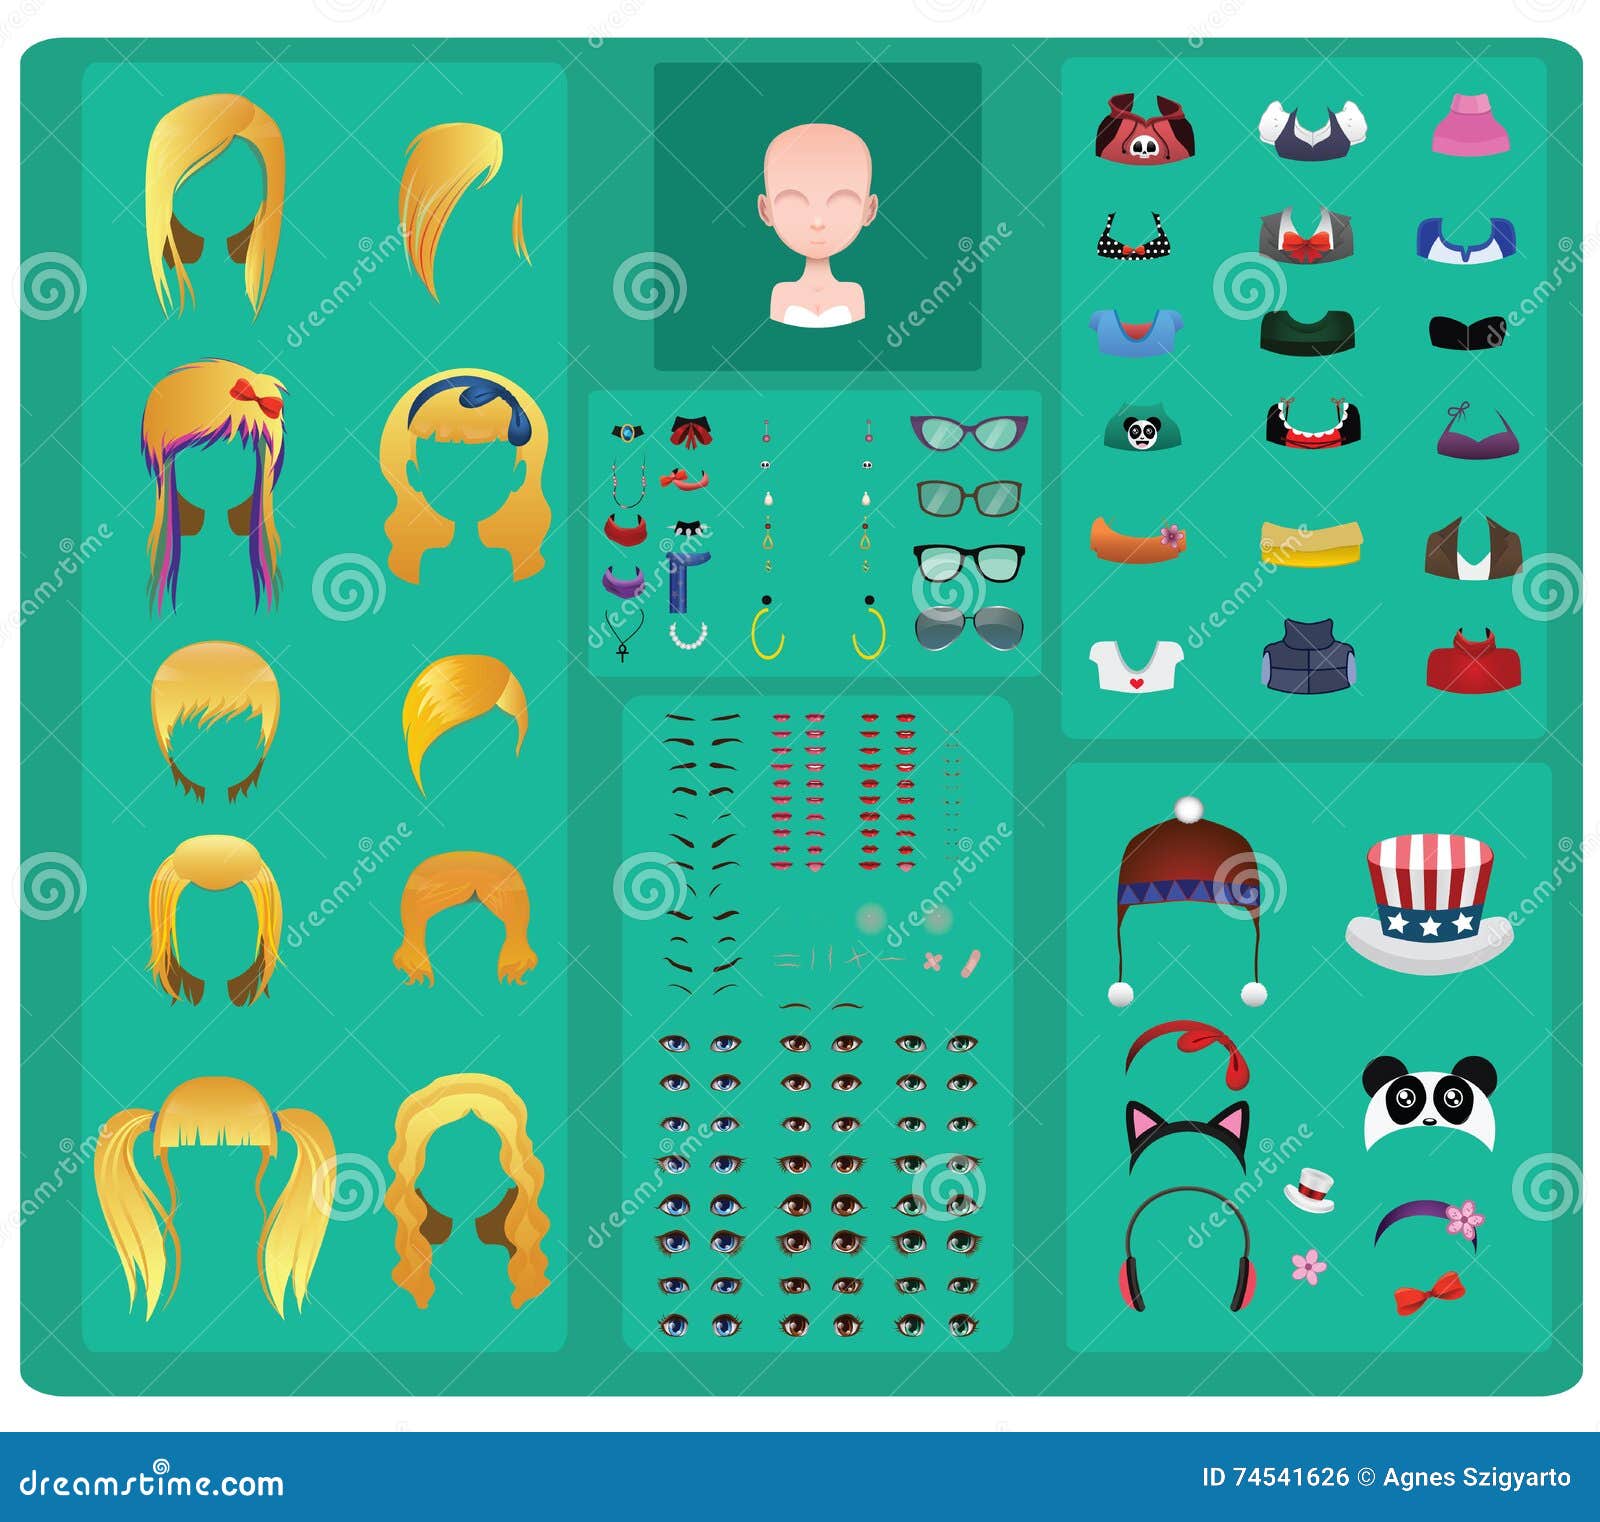 Avatar Maker Stock Illustrations – 177 Avatar Maker Stock